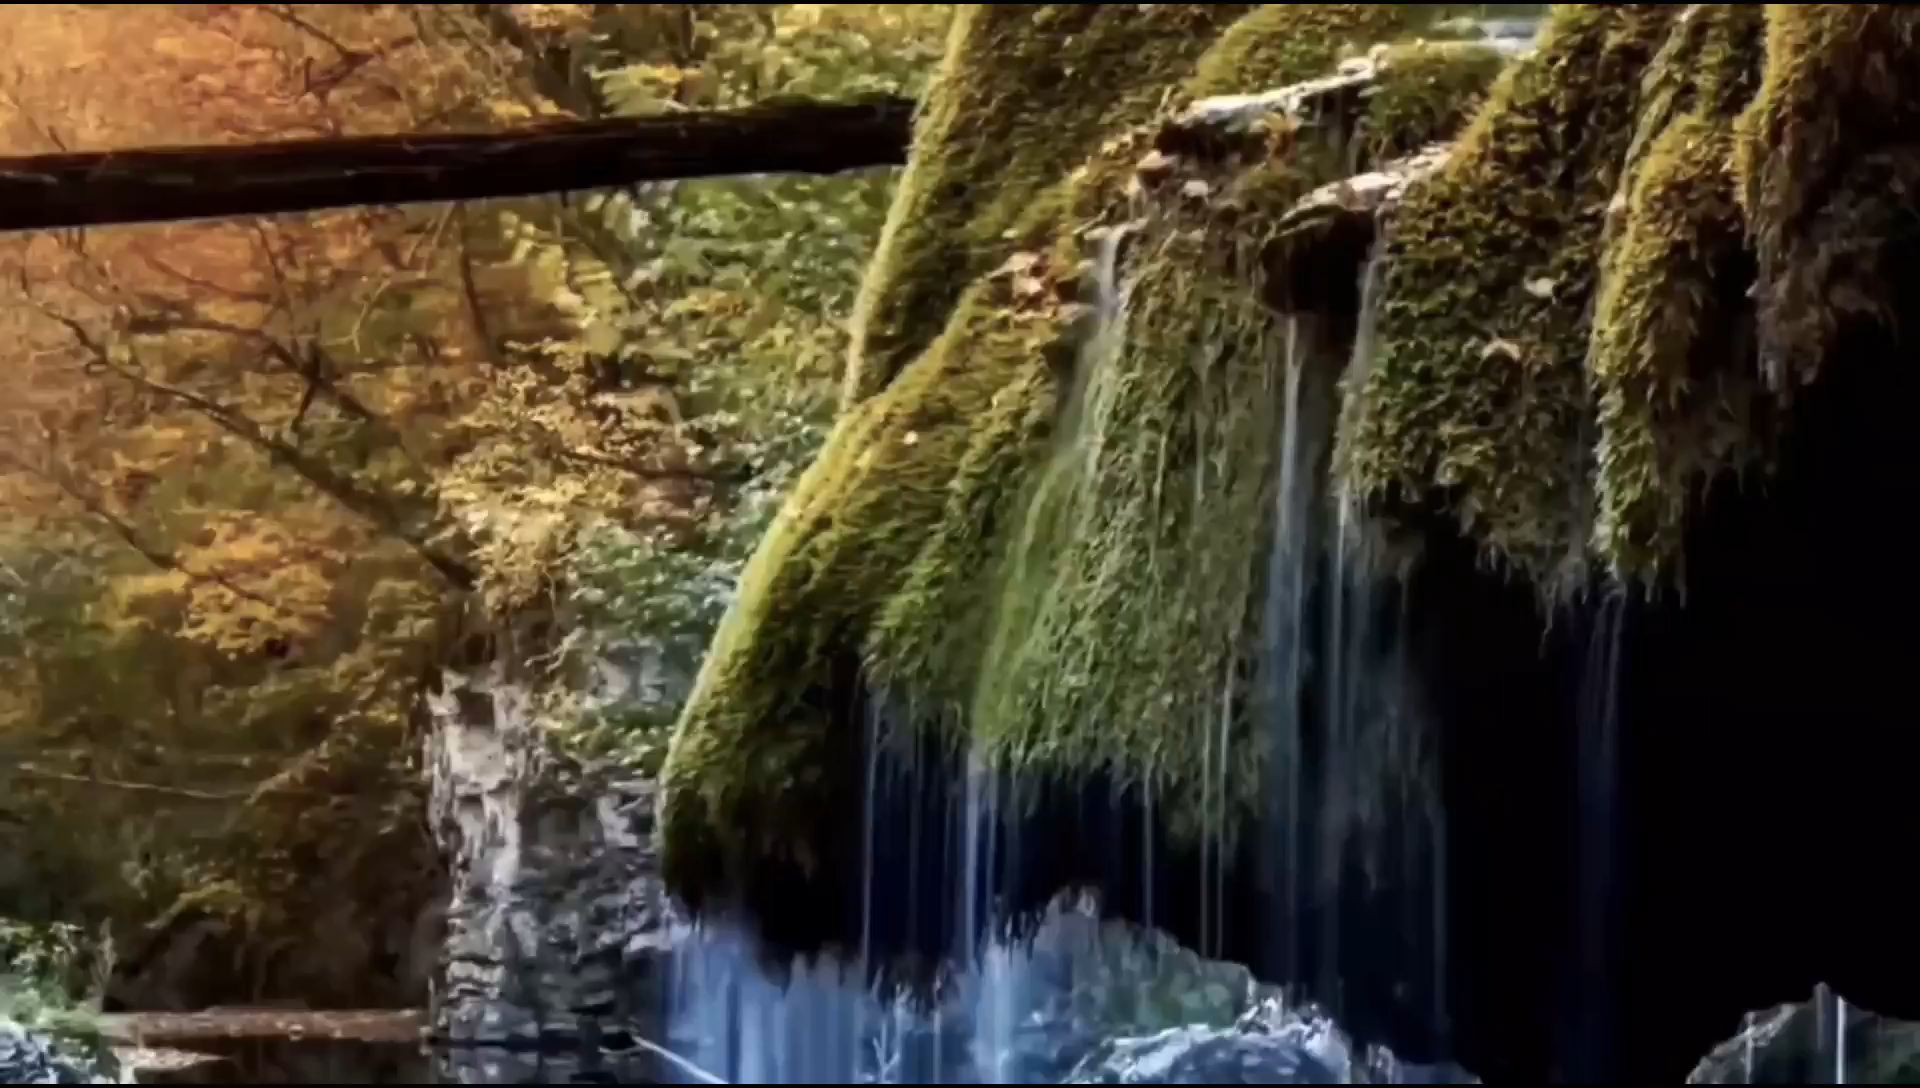 陕西商洛金丝峡景区旅行攻略#原始森林 #世界自然遗产 #天坑 #5a景区 #国家公园 #喀斯特地貌 